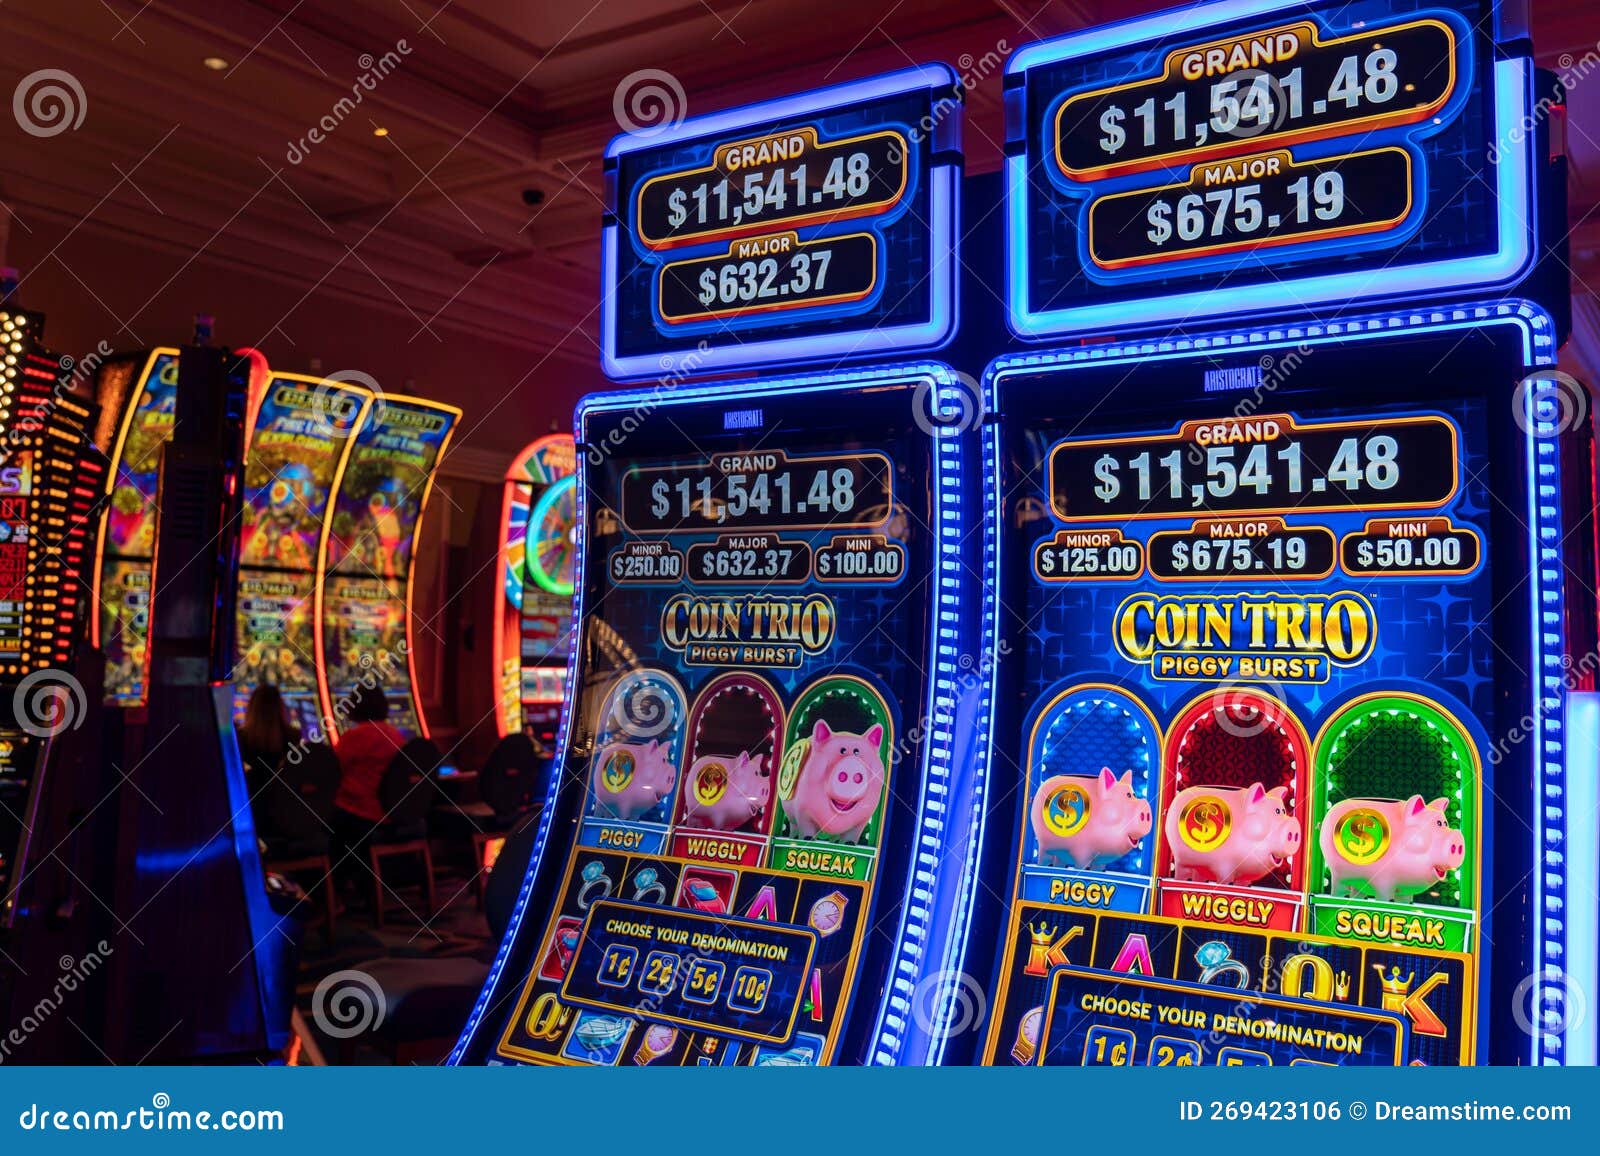 Jogo Na Noite E Ganha Por Las Vegas. Nevada Ganha Dinheiro Fácil. Foto  Editorial - Imagem de esportes, claridade: 269423106